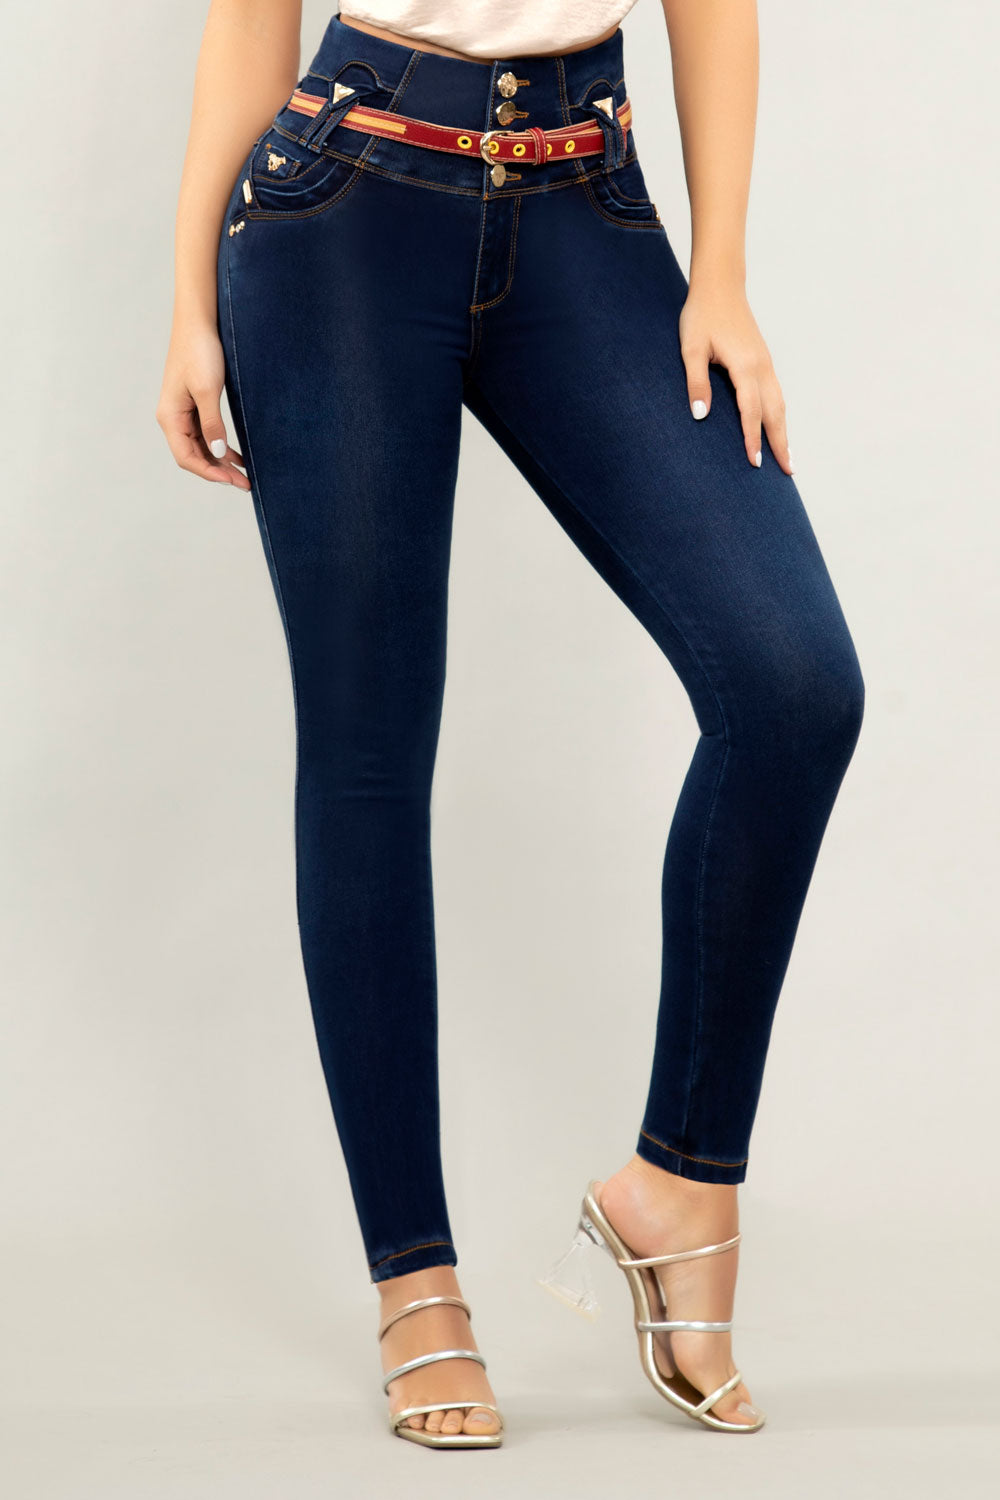 Los Mejores Jeans Colombianos - Encuentra jeans para mujer perfectos para  toda ocasión. Te traemos los recomendados de la semana. Comprar: www. jeanscolombianos.com/revel56357 #jeanscolombianos #jeanslevantacola  #fashion #style #stylish #love #girls